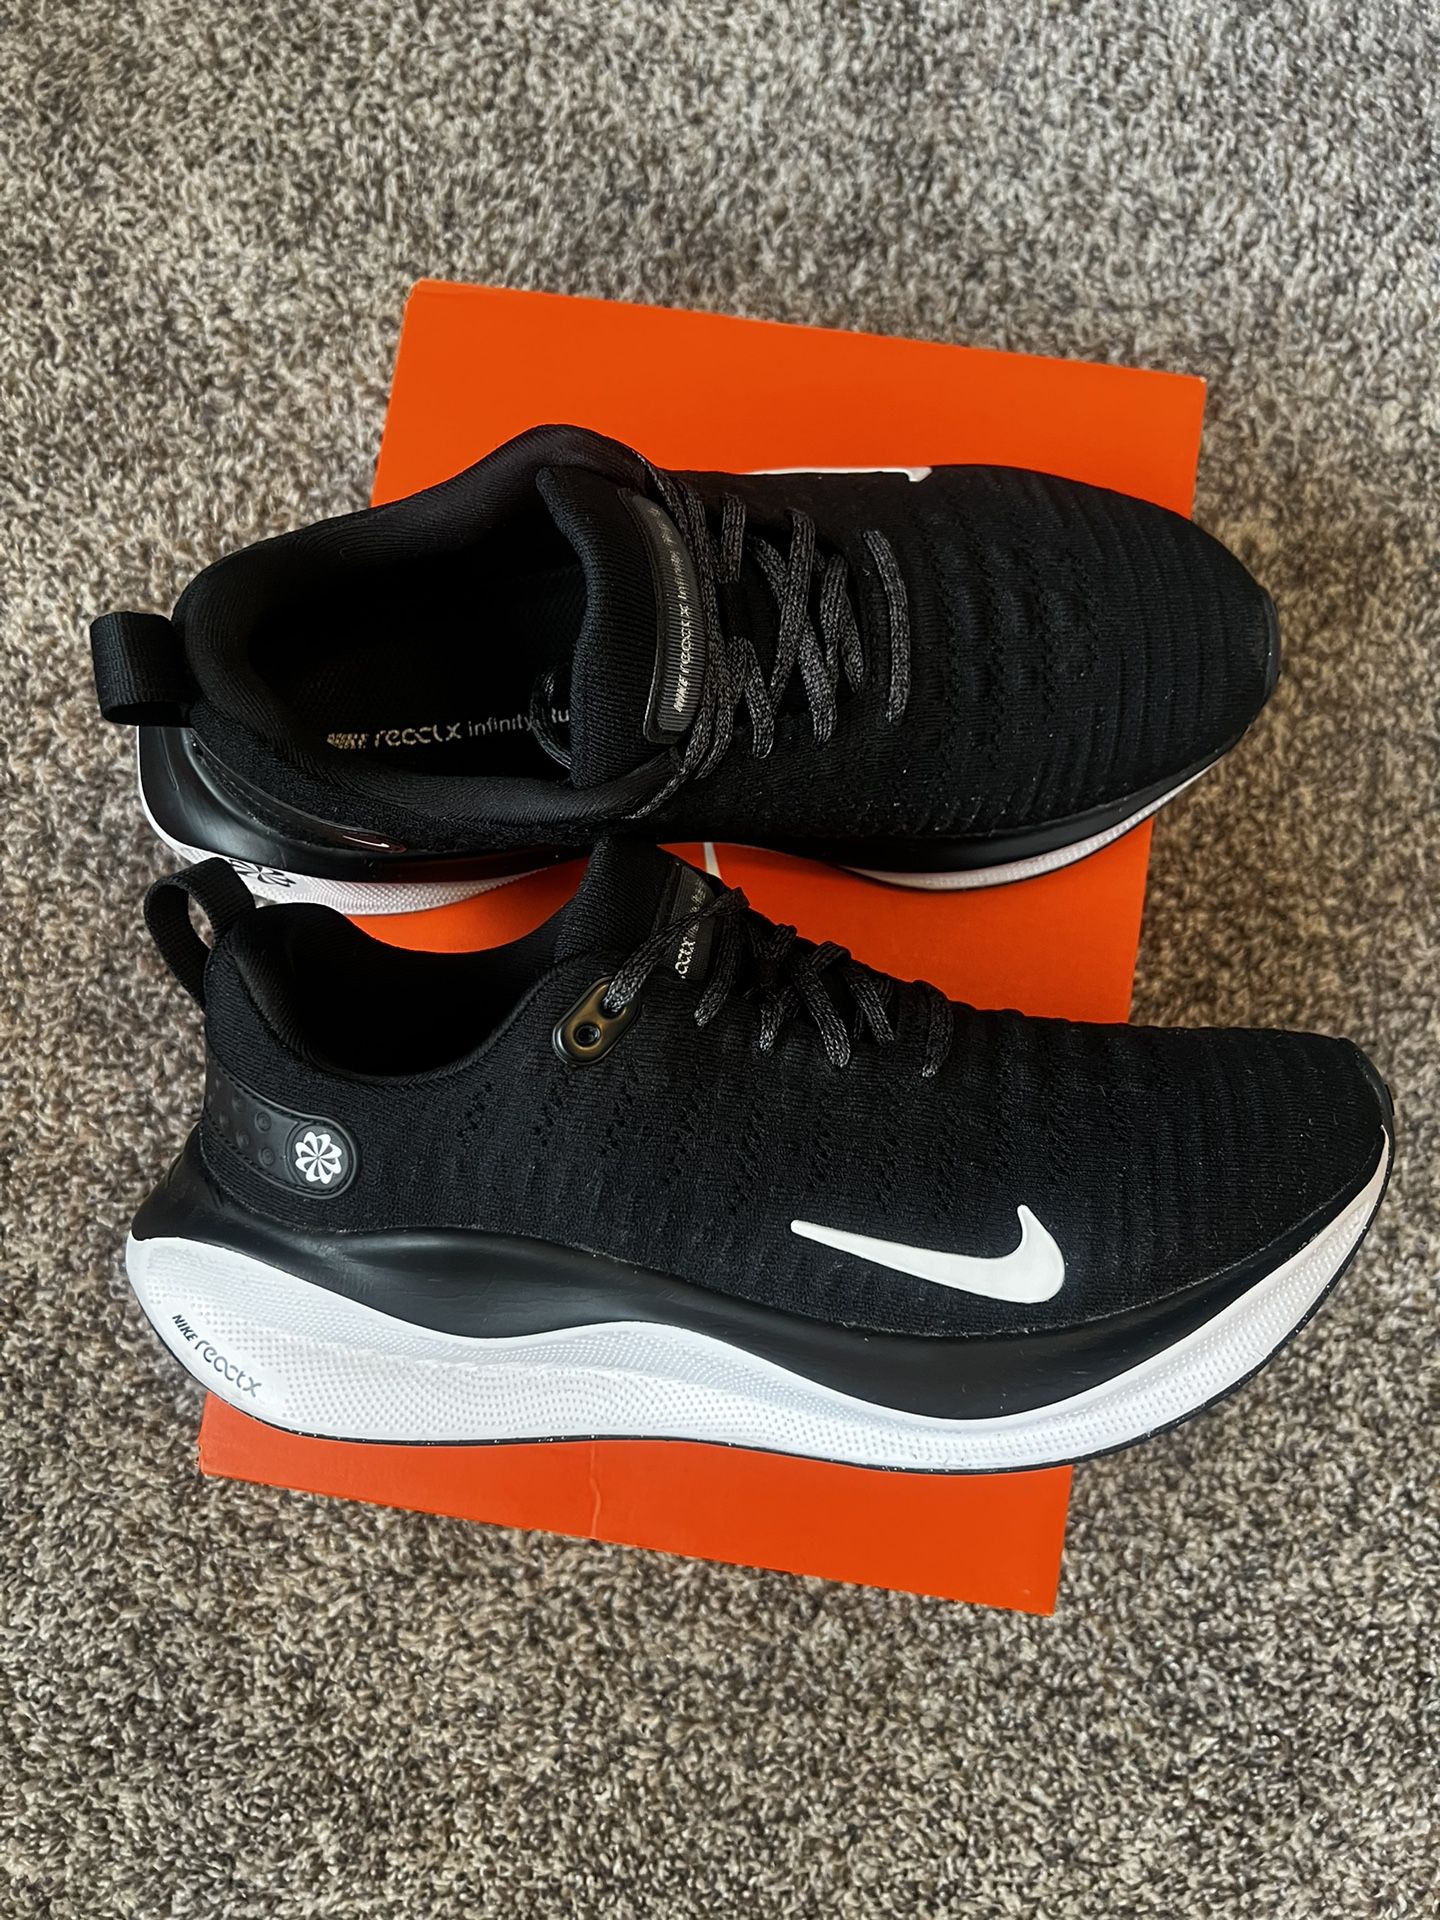 Nike Running Size 8 